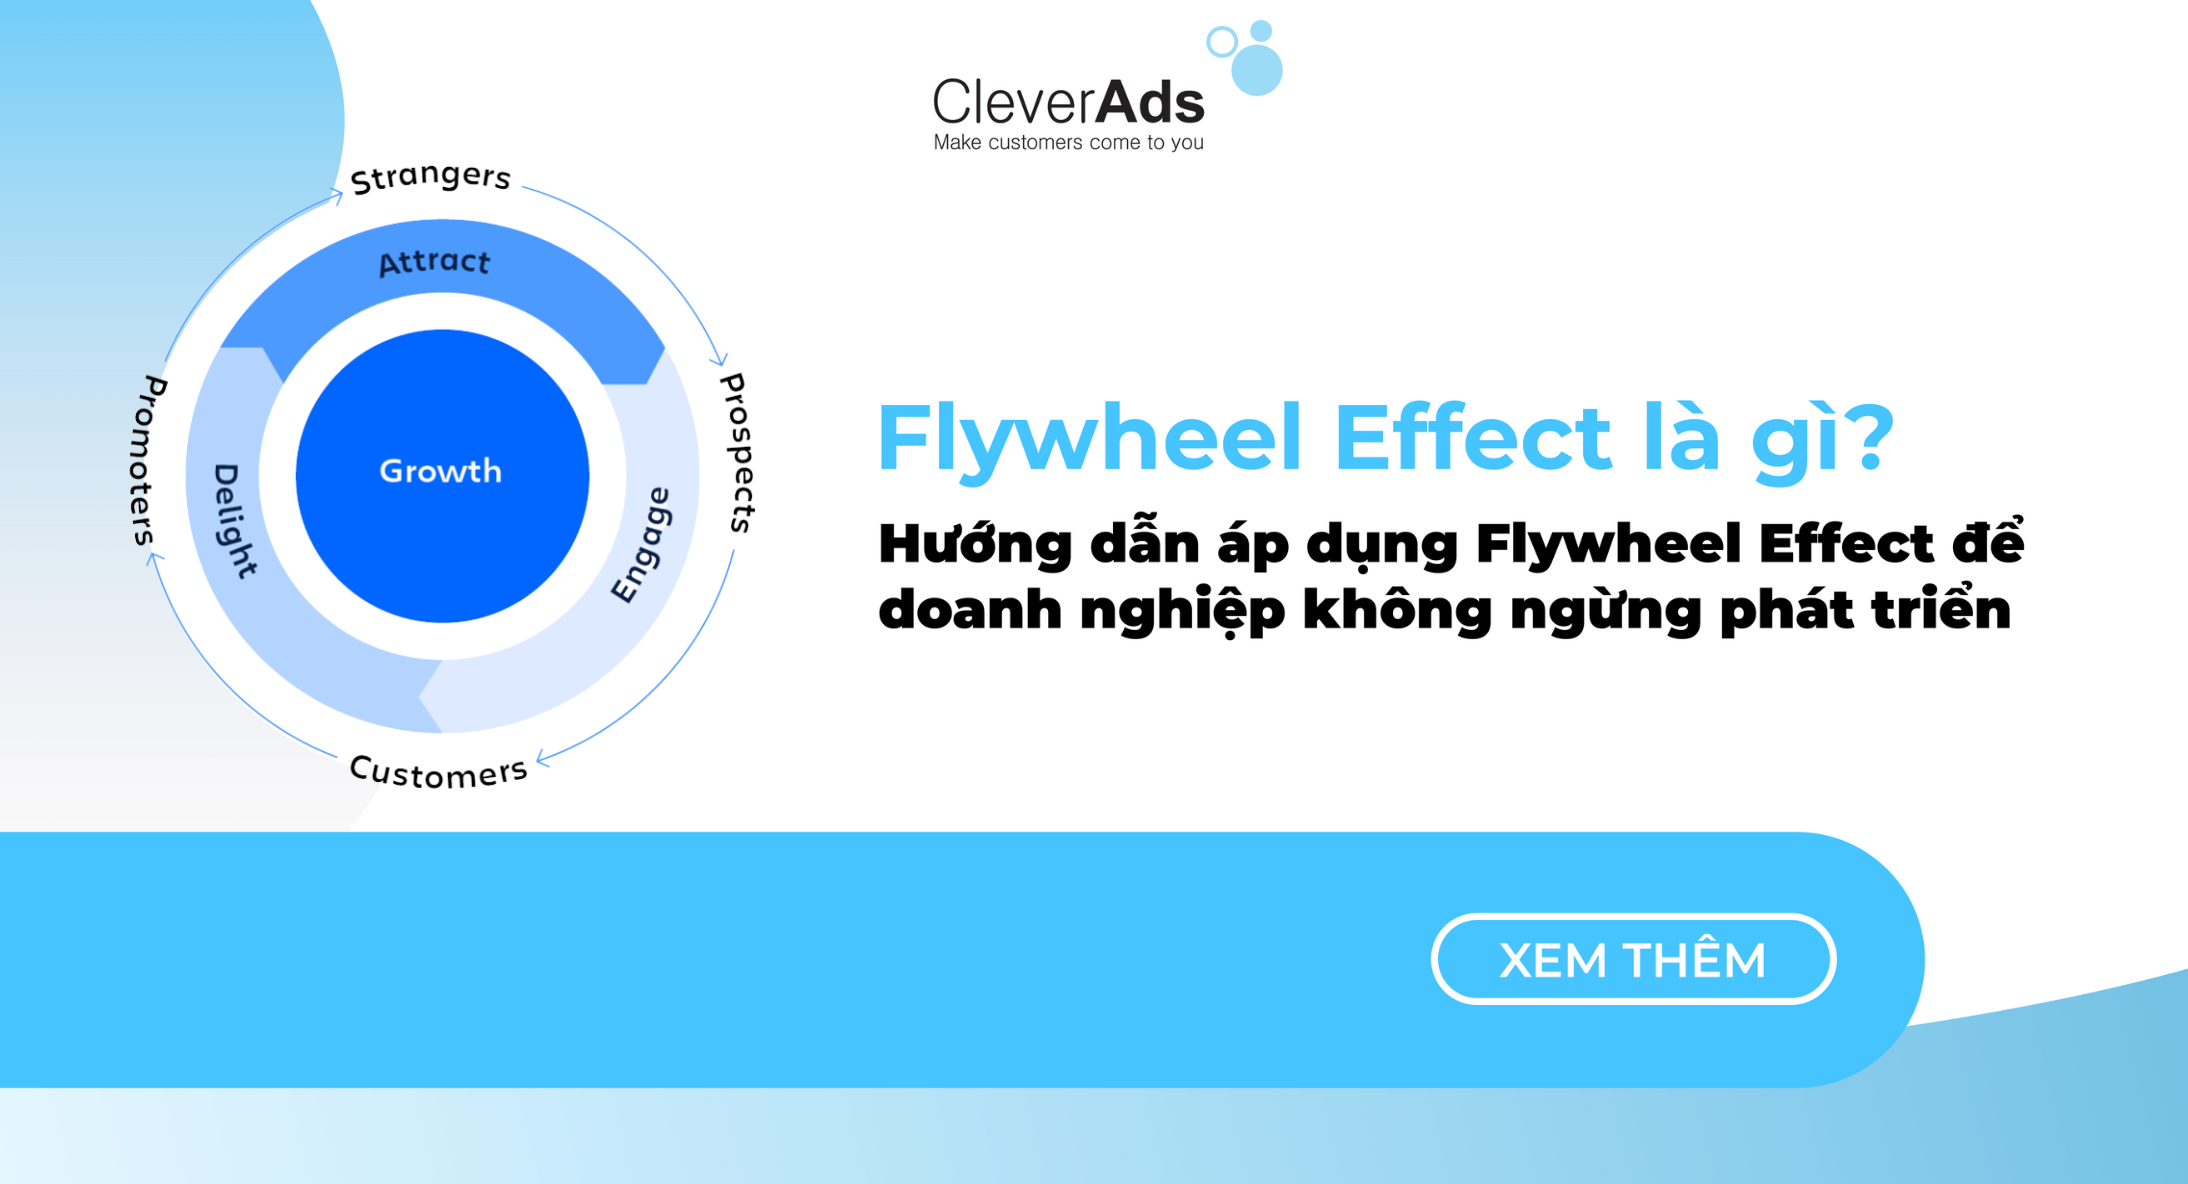 Flywheel Effect là gì? Cách áp dụng Flywheel Effect